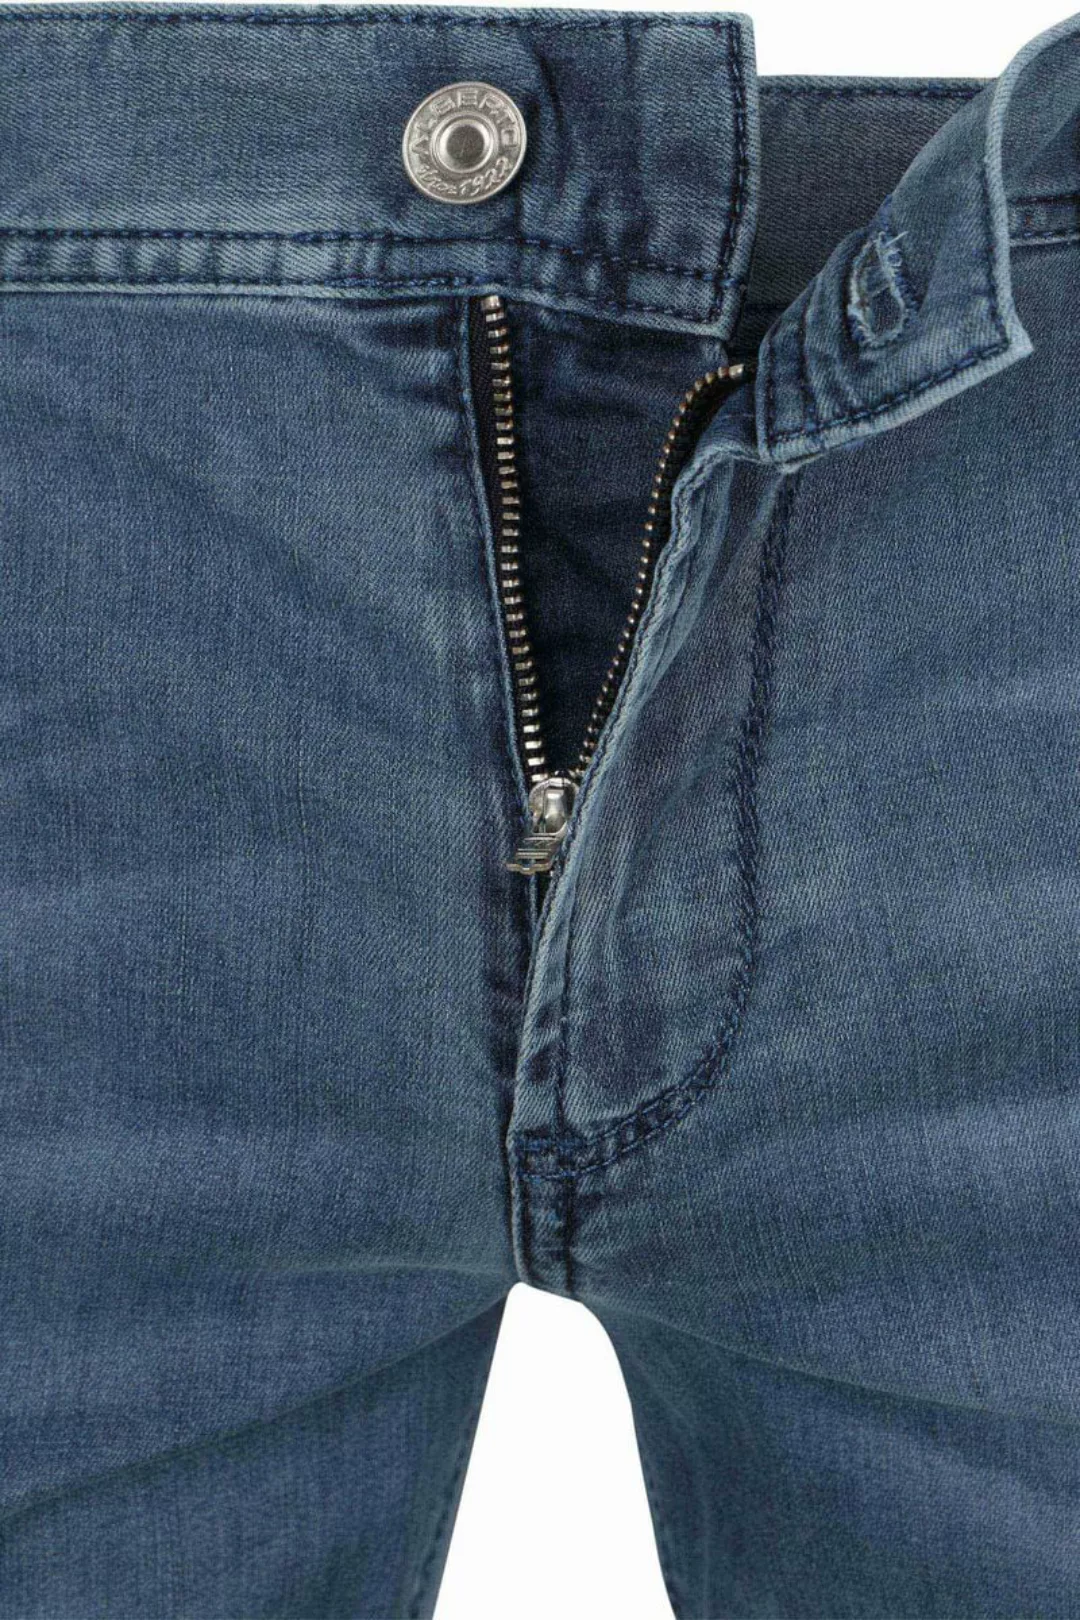 Alberto Pipe Jeans Blau - Größe W 34 - L 32 günstig online kaufen